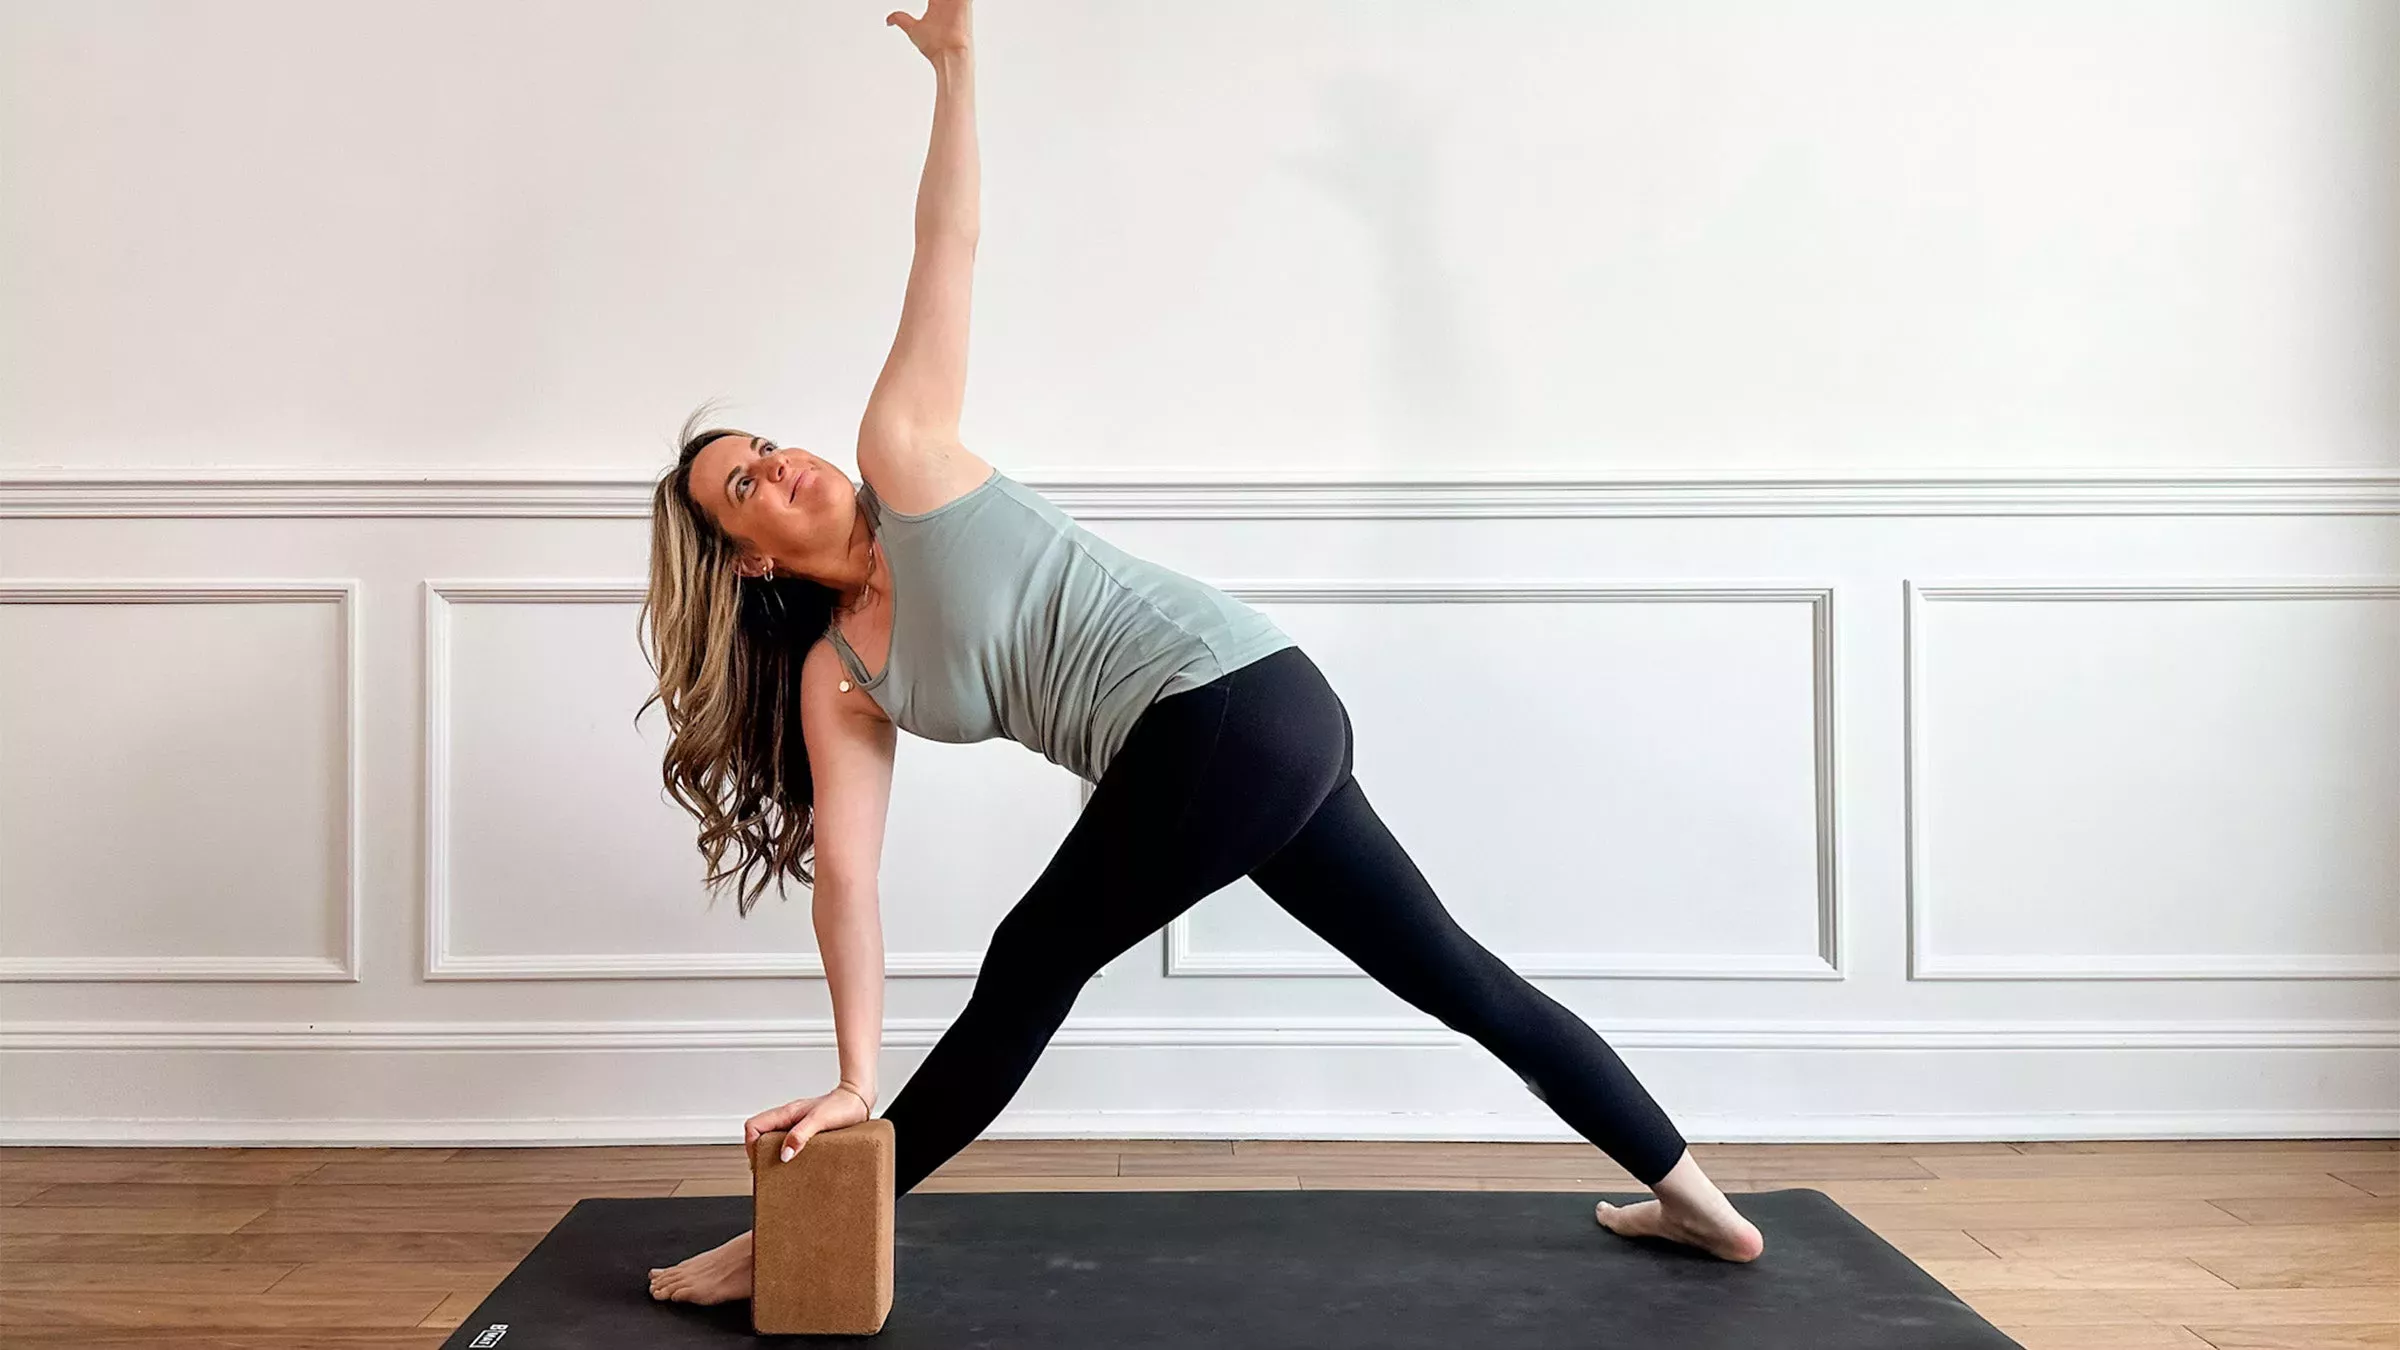  El método de este profesor de yoga para entrar en el planchón lateral lo cambiará todo para ti